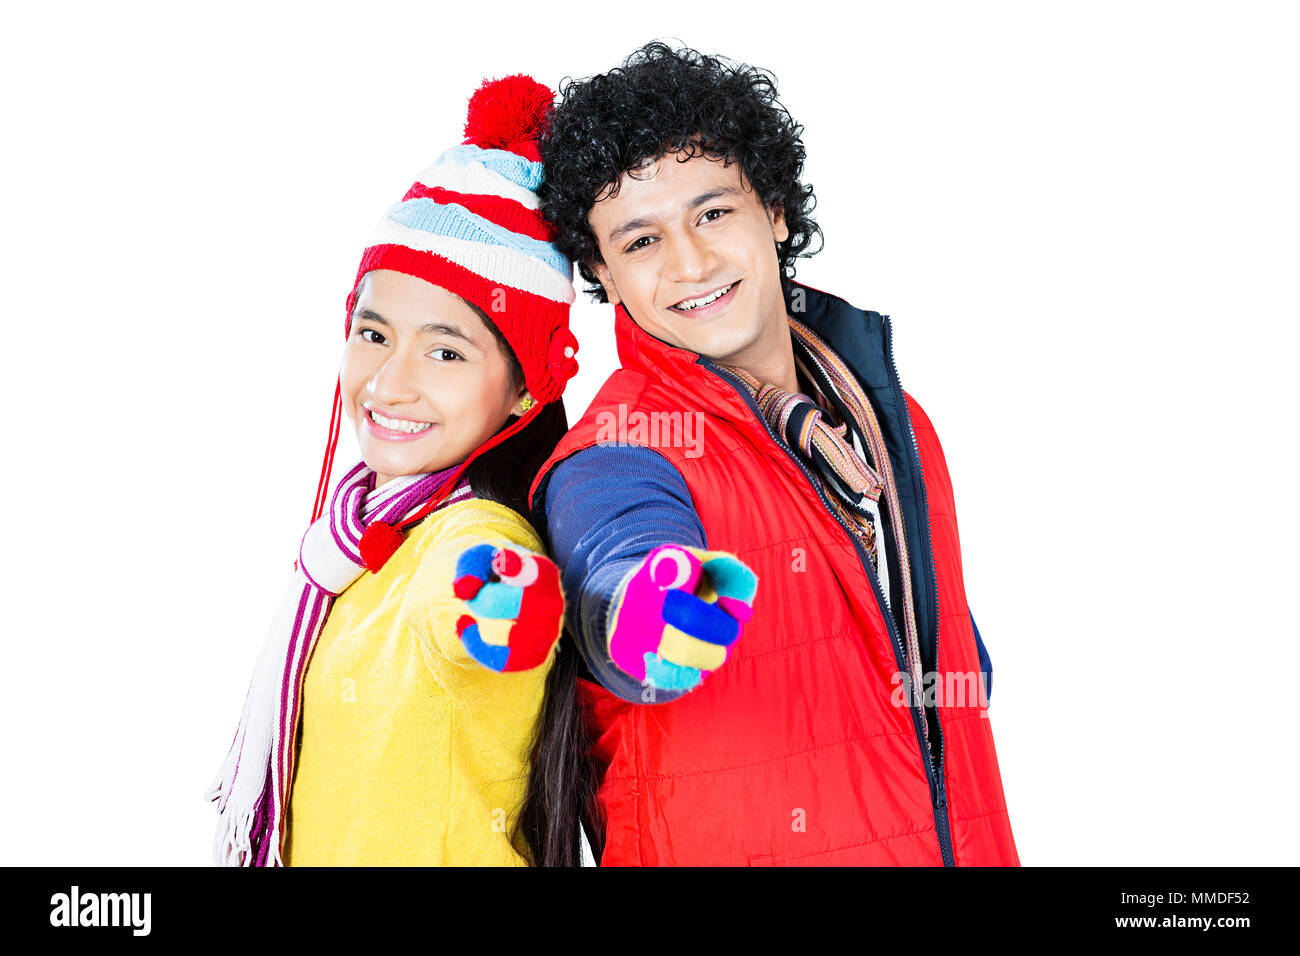 Deux jeunes souriant ami des vêtements d'hiver Doigt montrant Winter-Season Banque D'Images